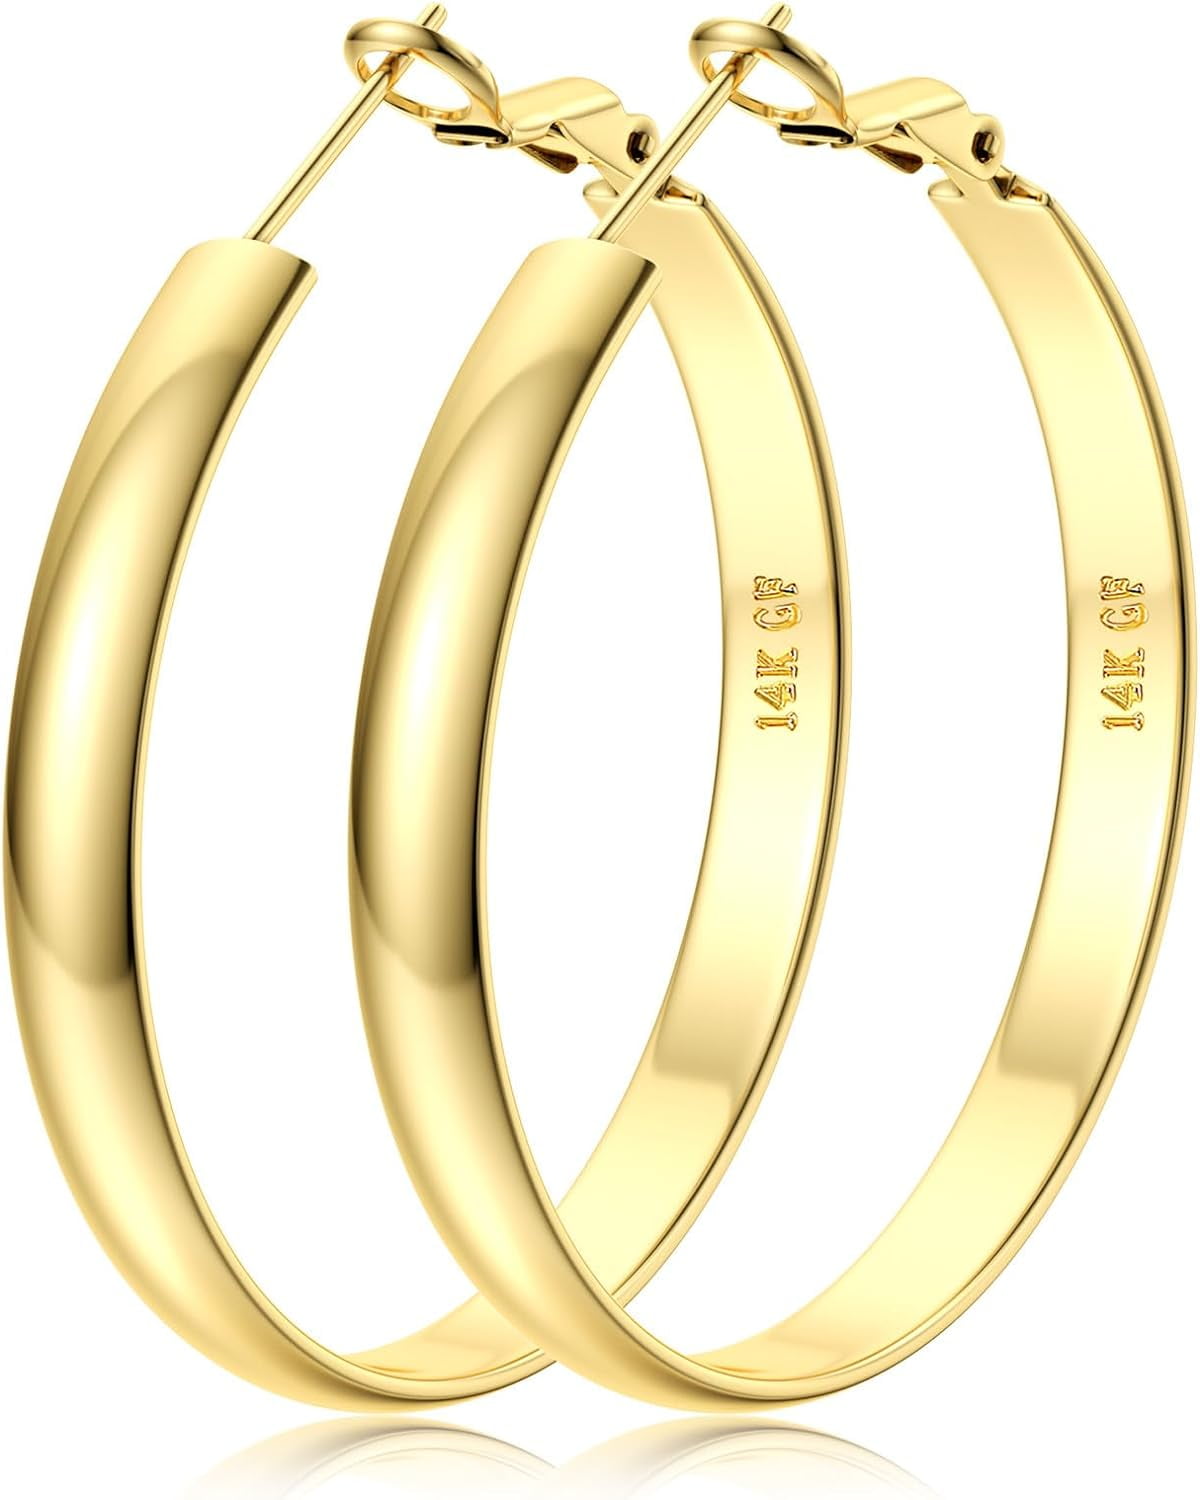 Bavsenic14K Gold Filled Hoop Earrings for Women, 5mm Wide ...